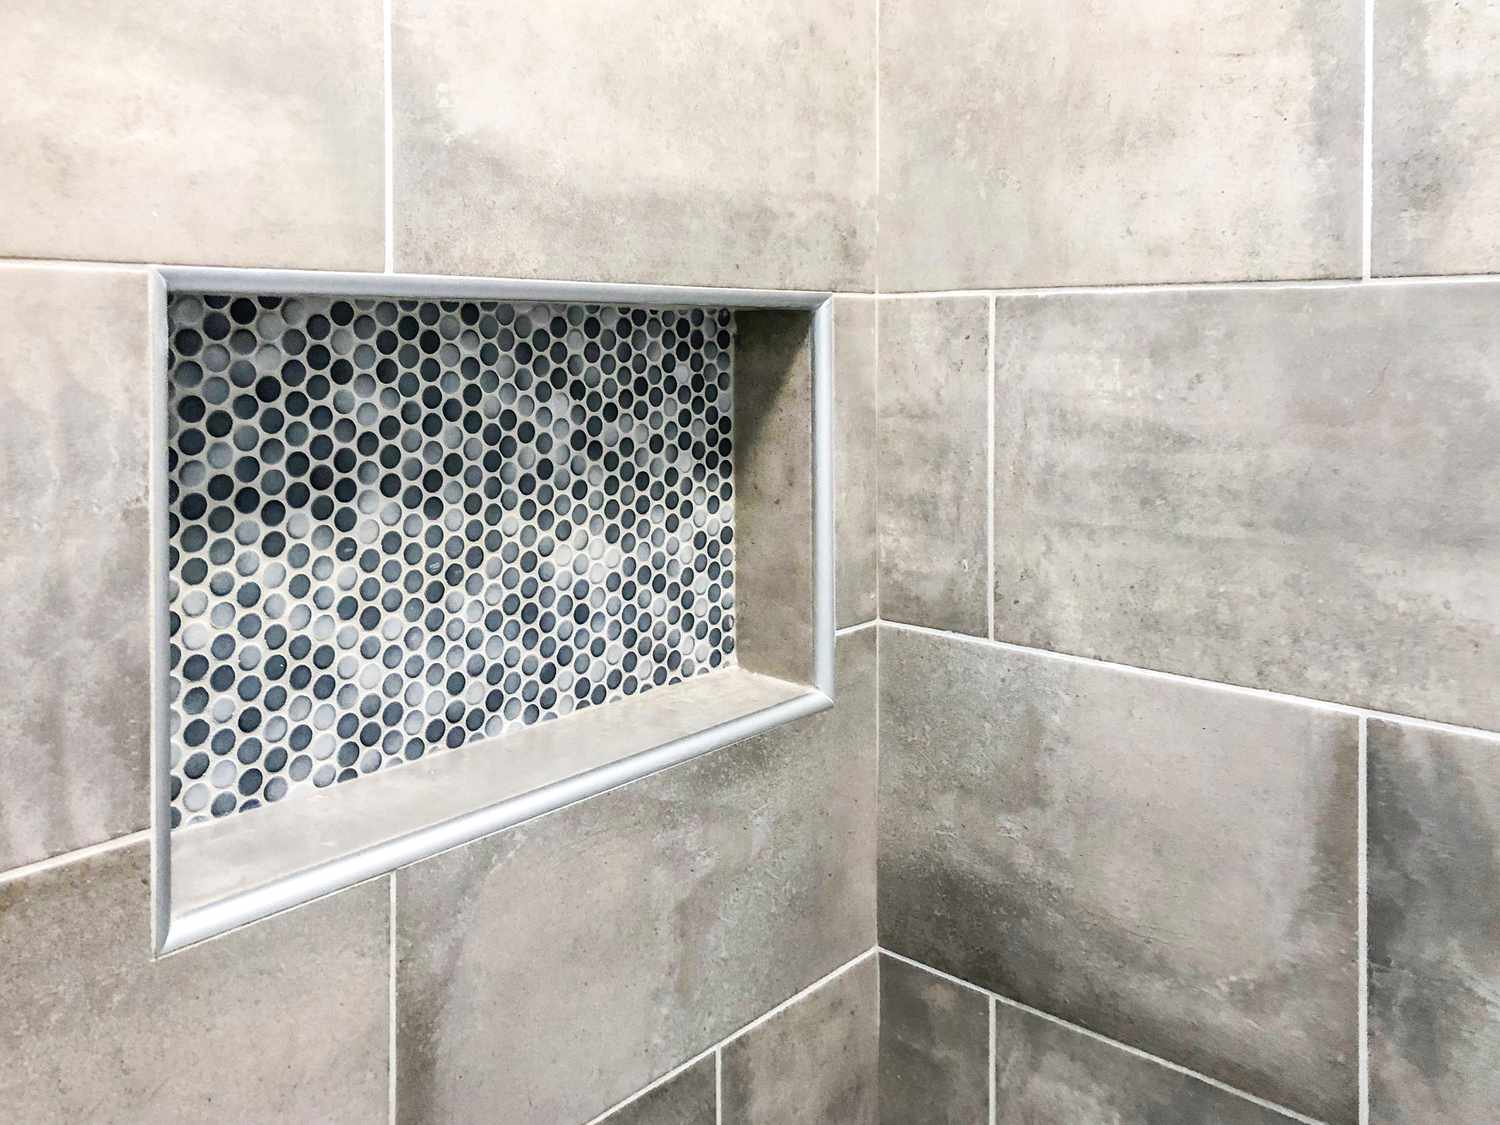 Parede de banheiro moderno em porcelanato no tom cinza com nicho decorativo personalizado retangular na parede para xampu e sabonete